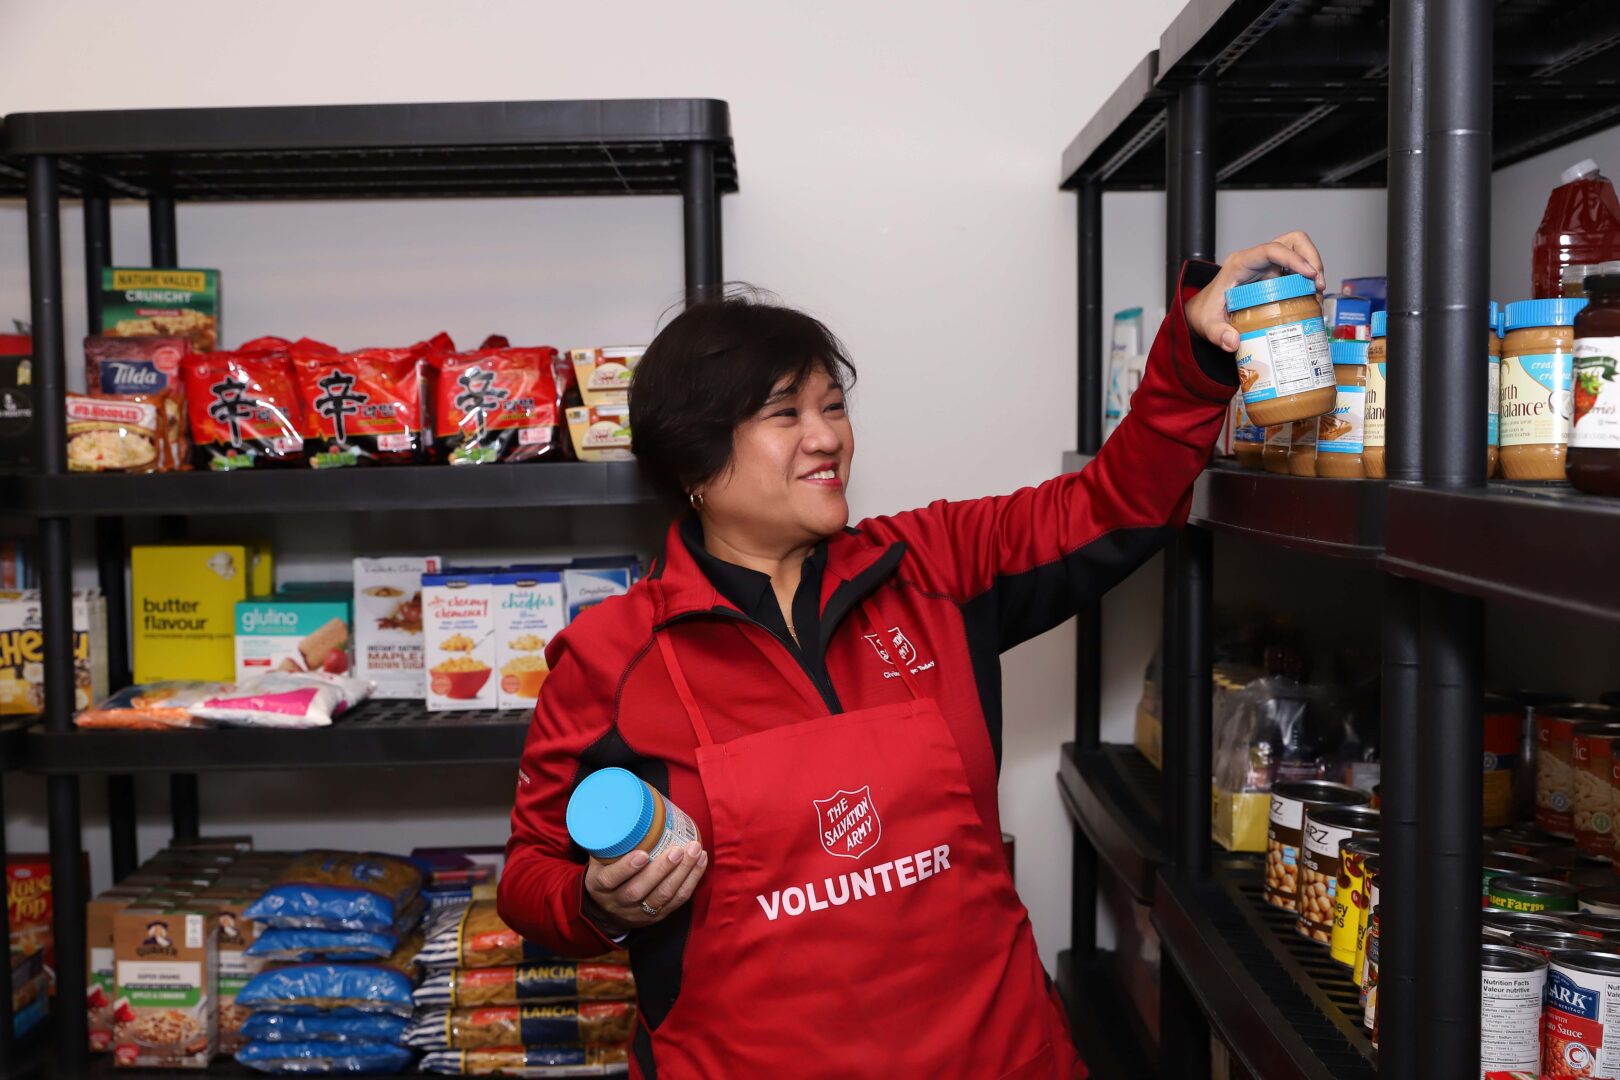 Salvation Army volunteer sorting food in a food bank